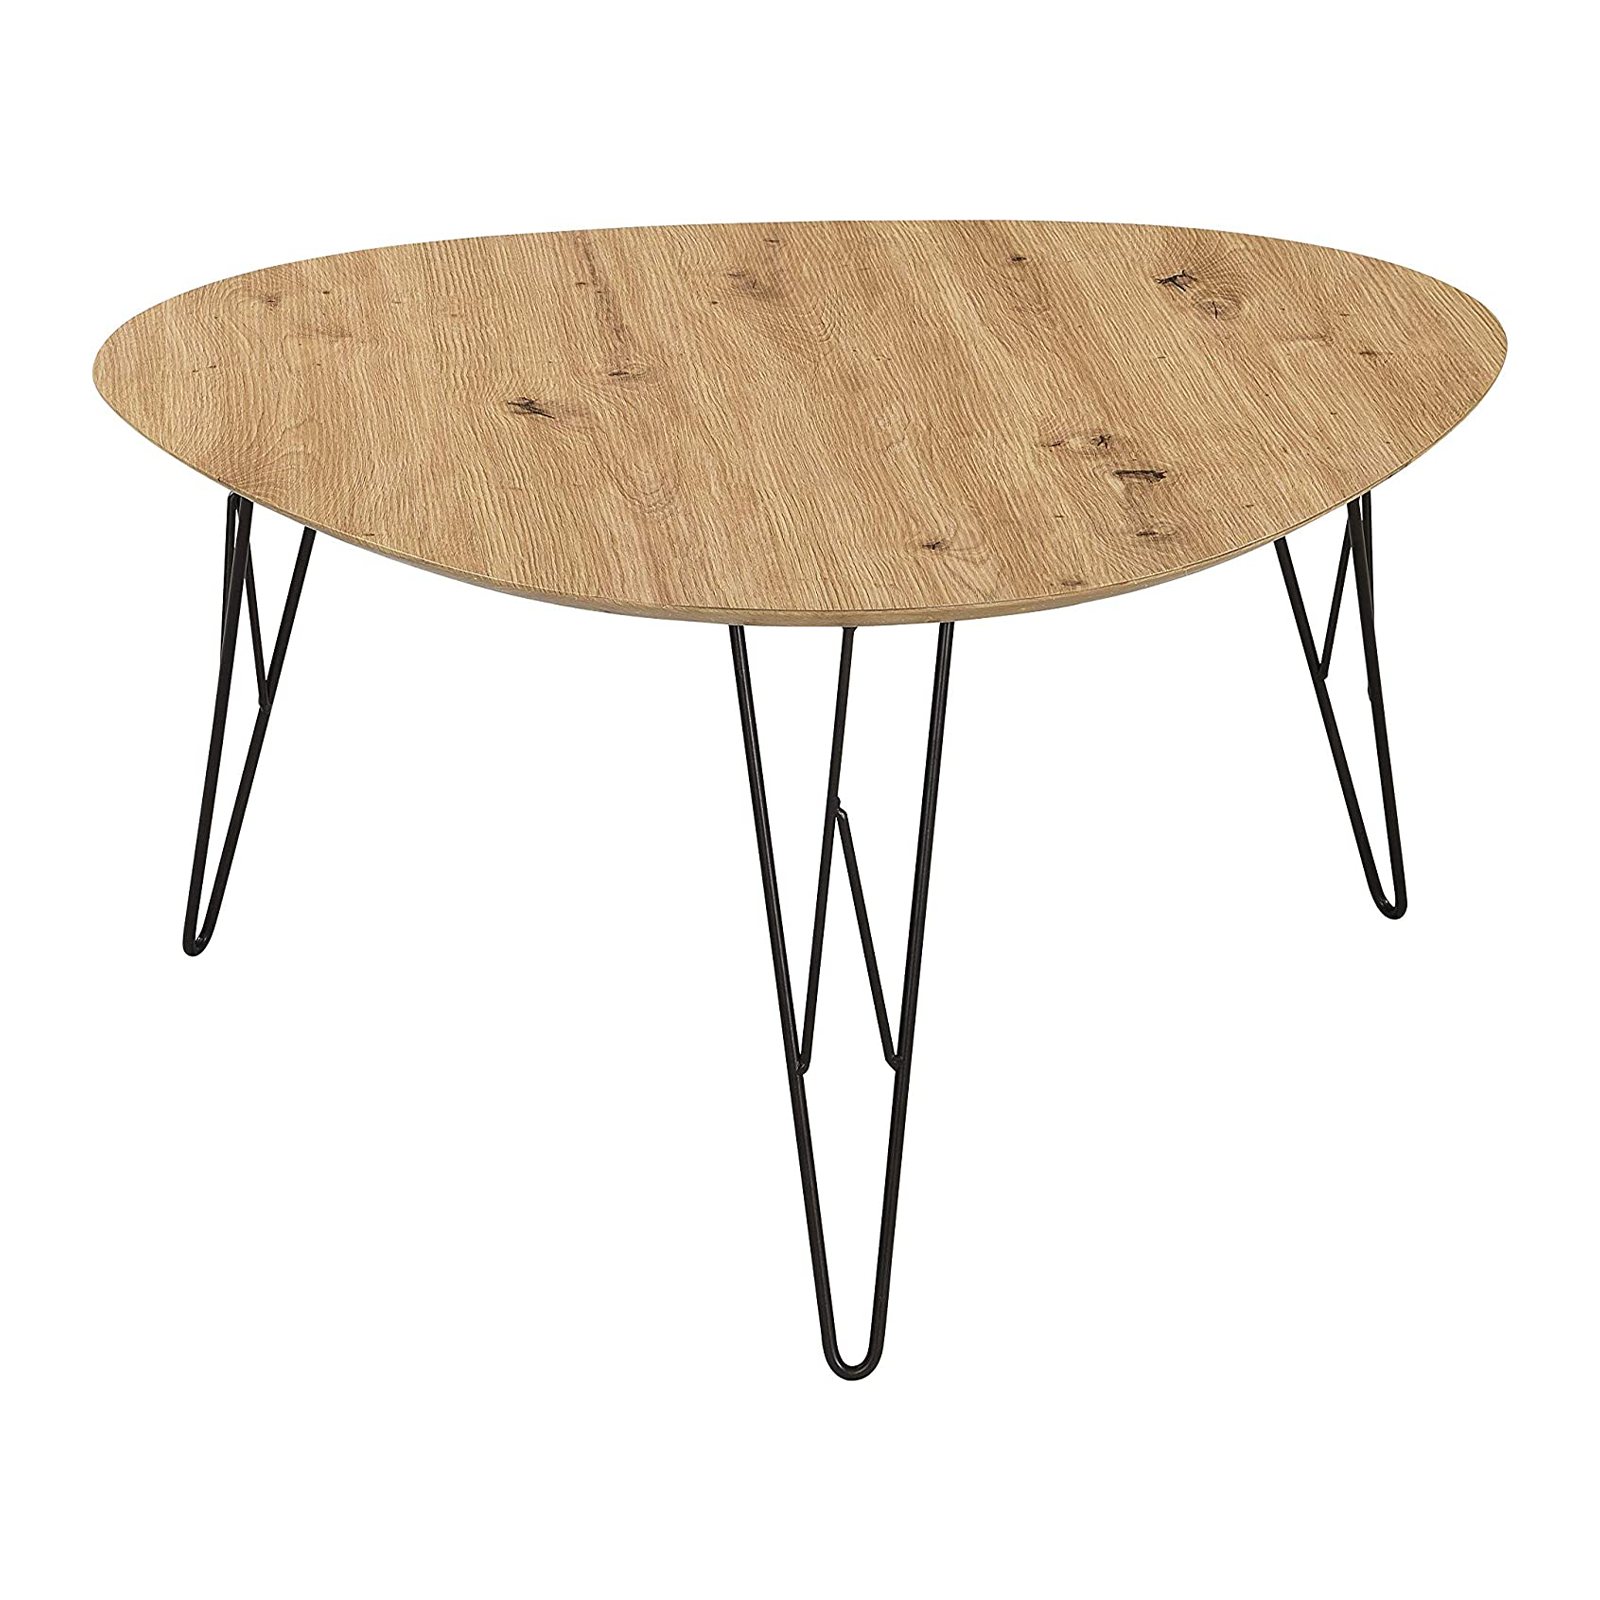 Tavolino basso da caffè Tampa per soggiorno in metallo e legno quercia cm 80x78 41h